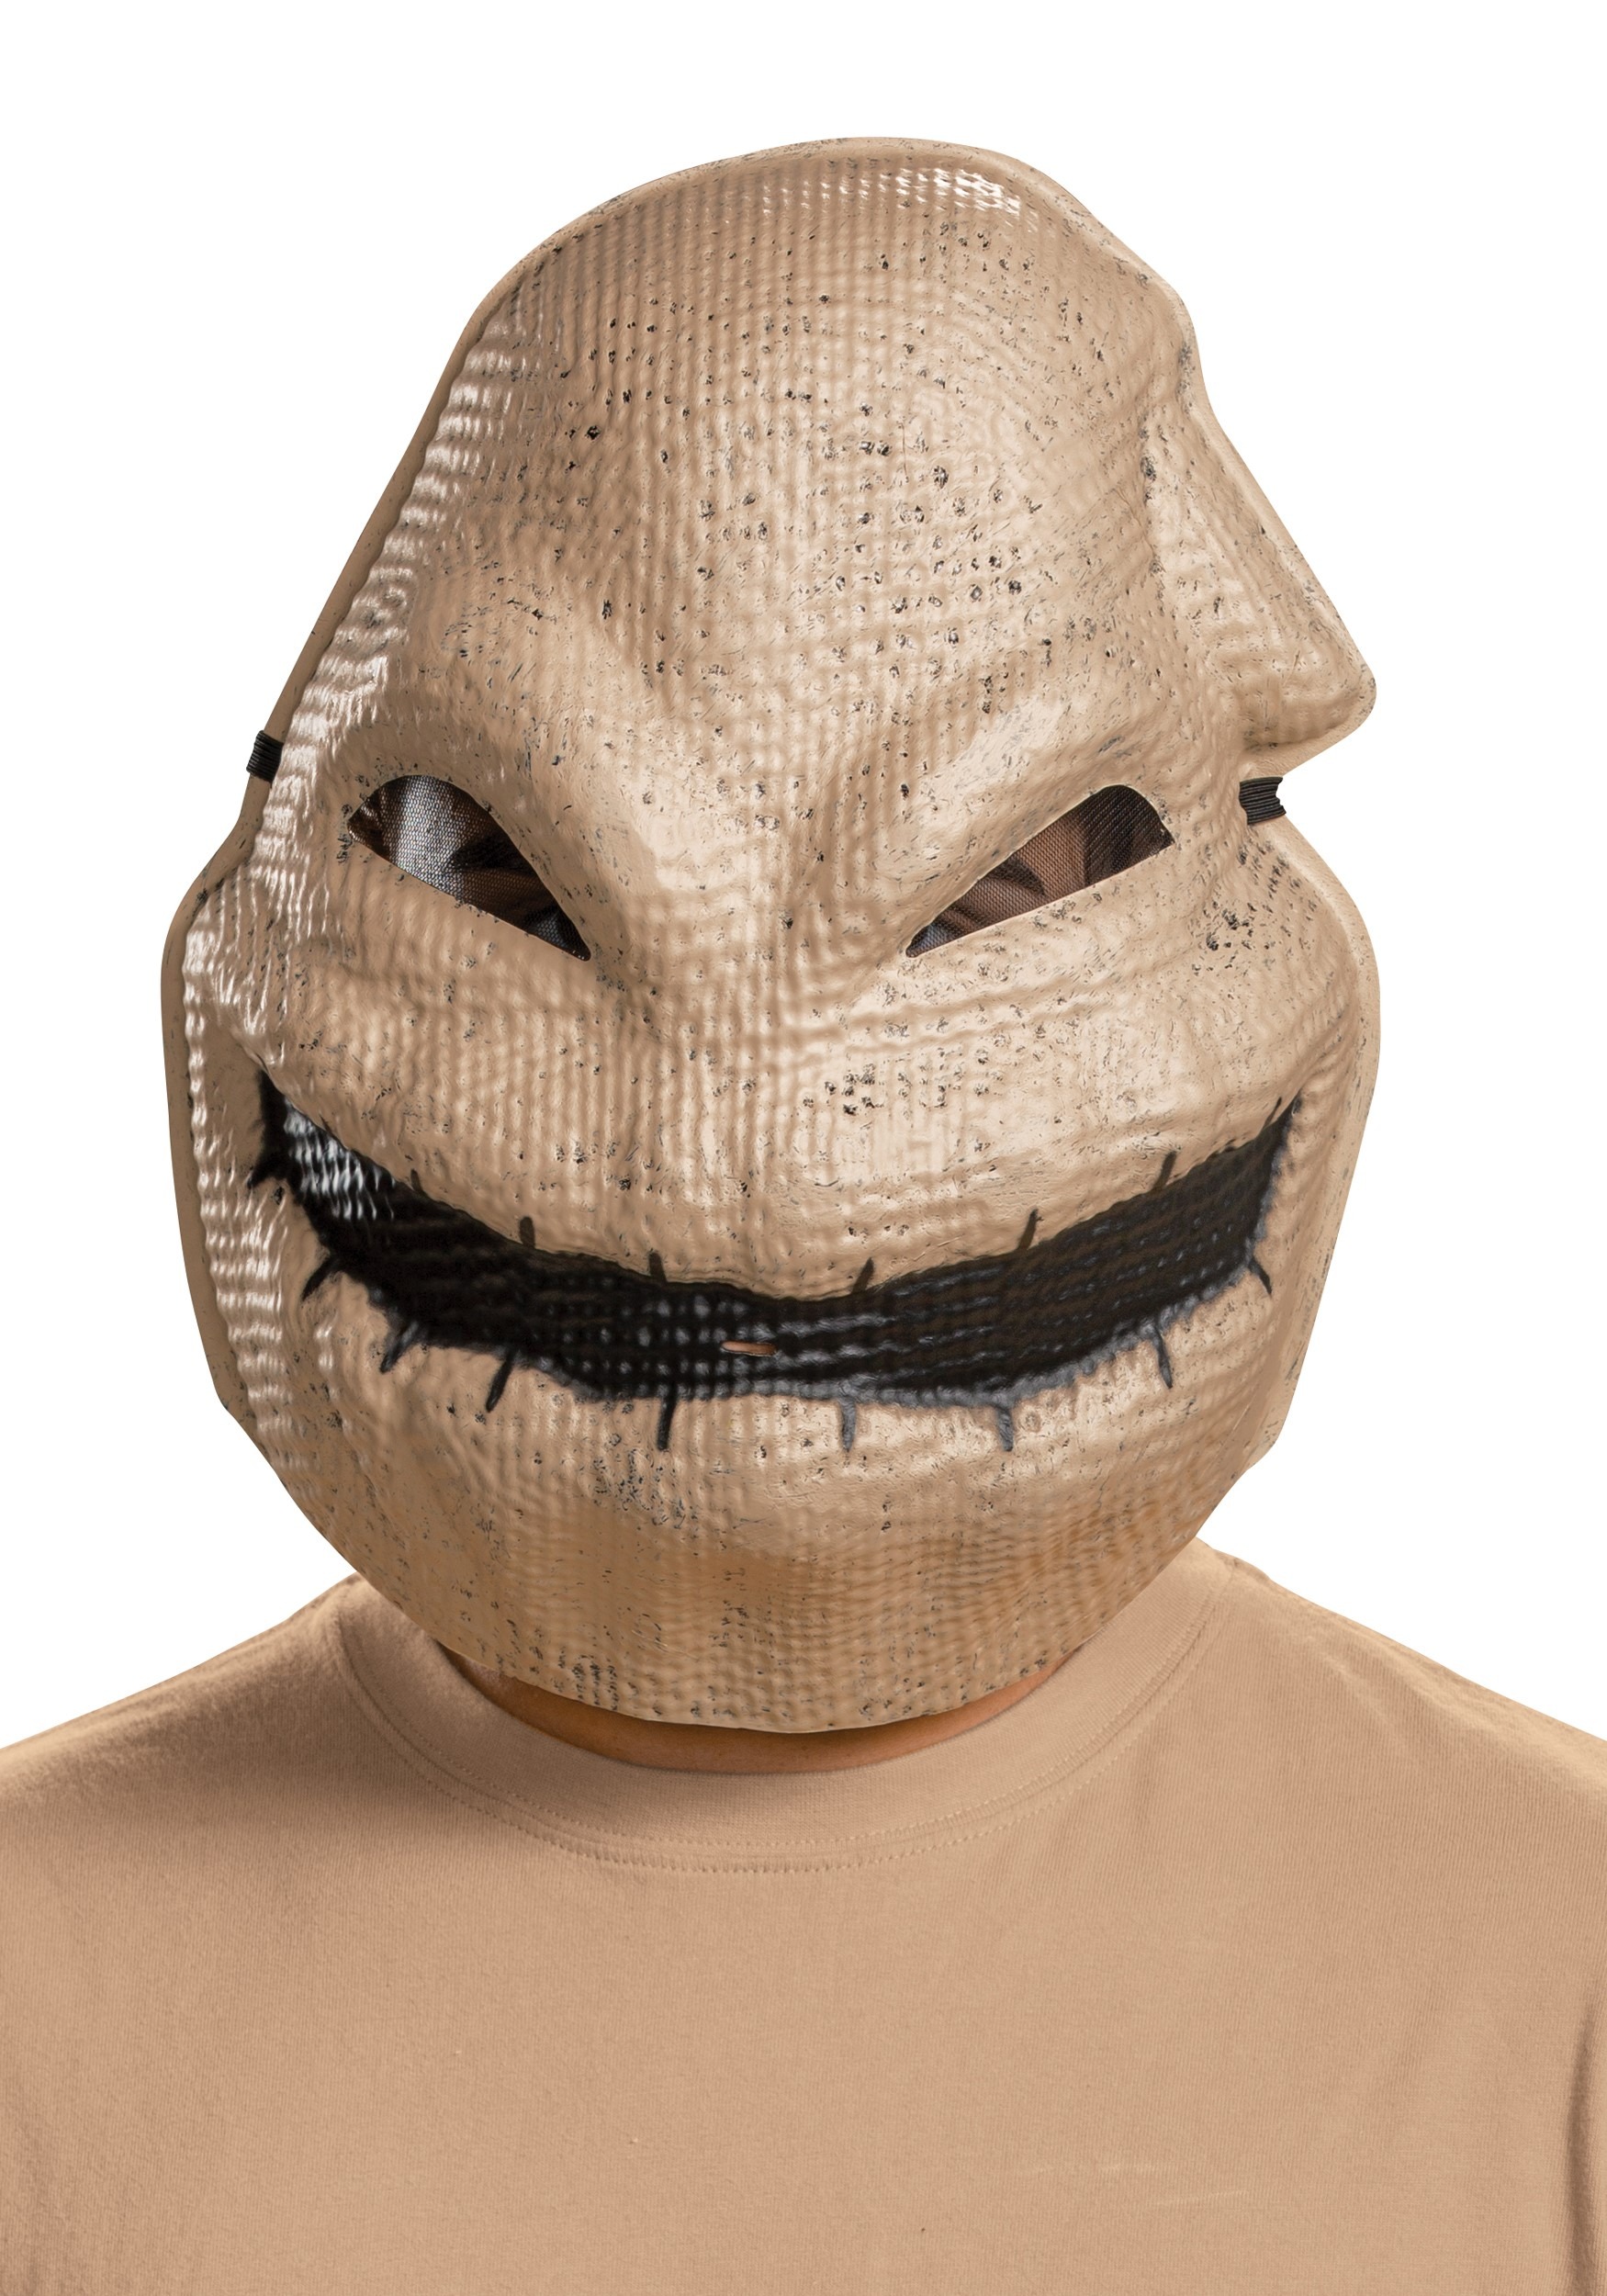 Jack Skellington Full Vinyl Mask Halloween Nightmare Before Christmas Disguise